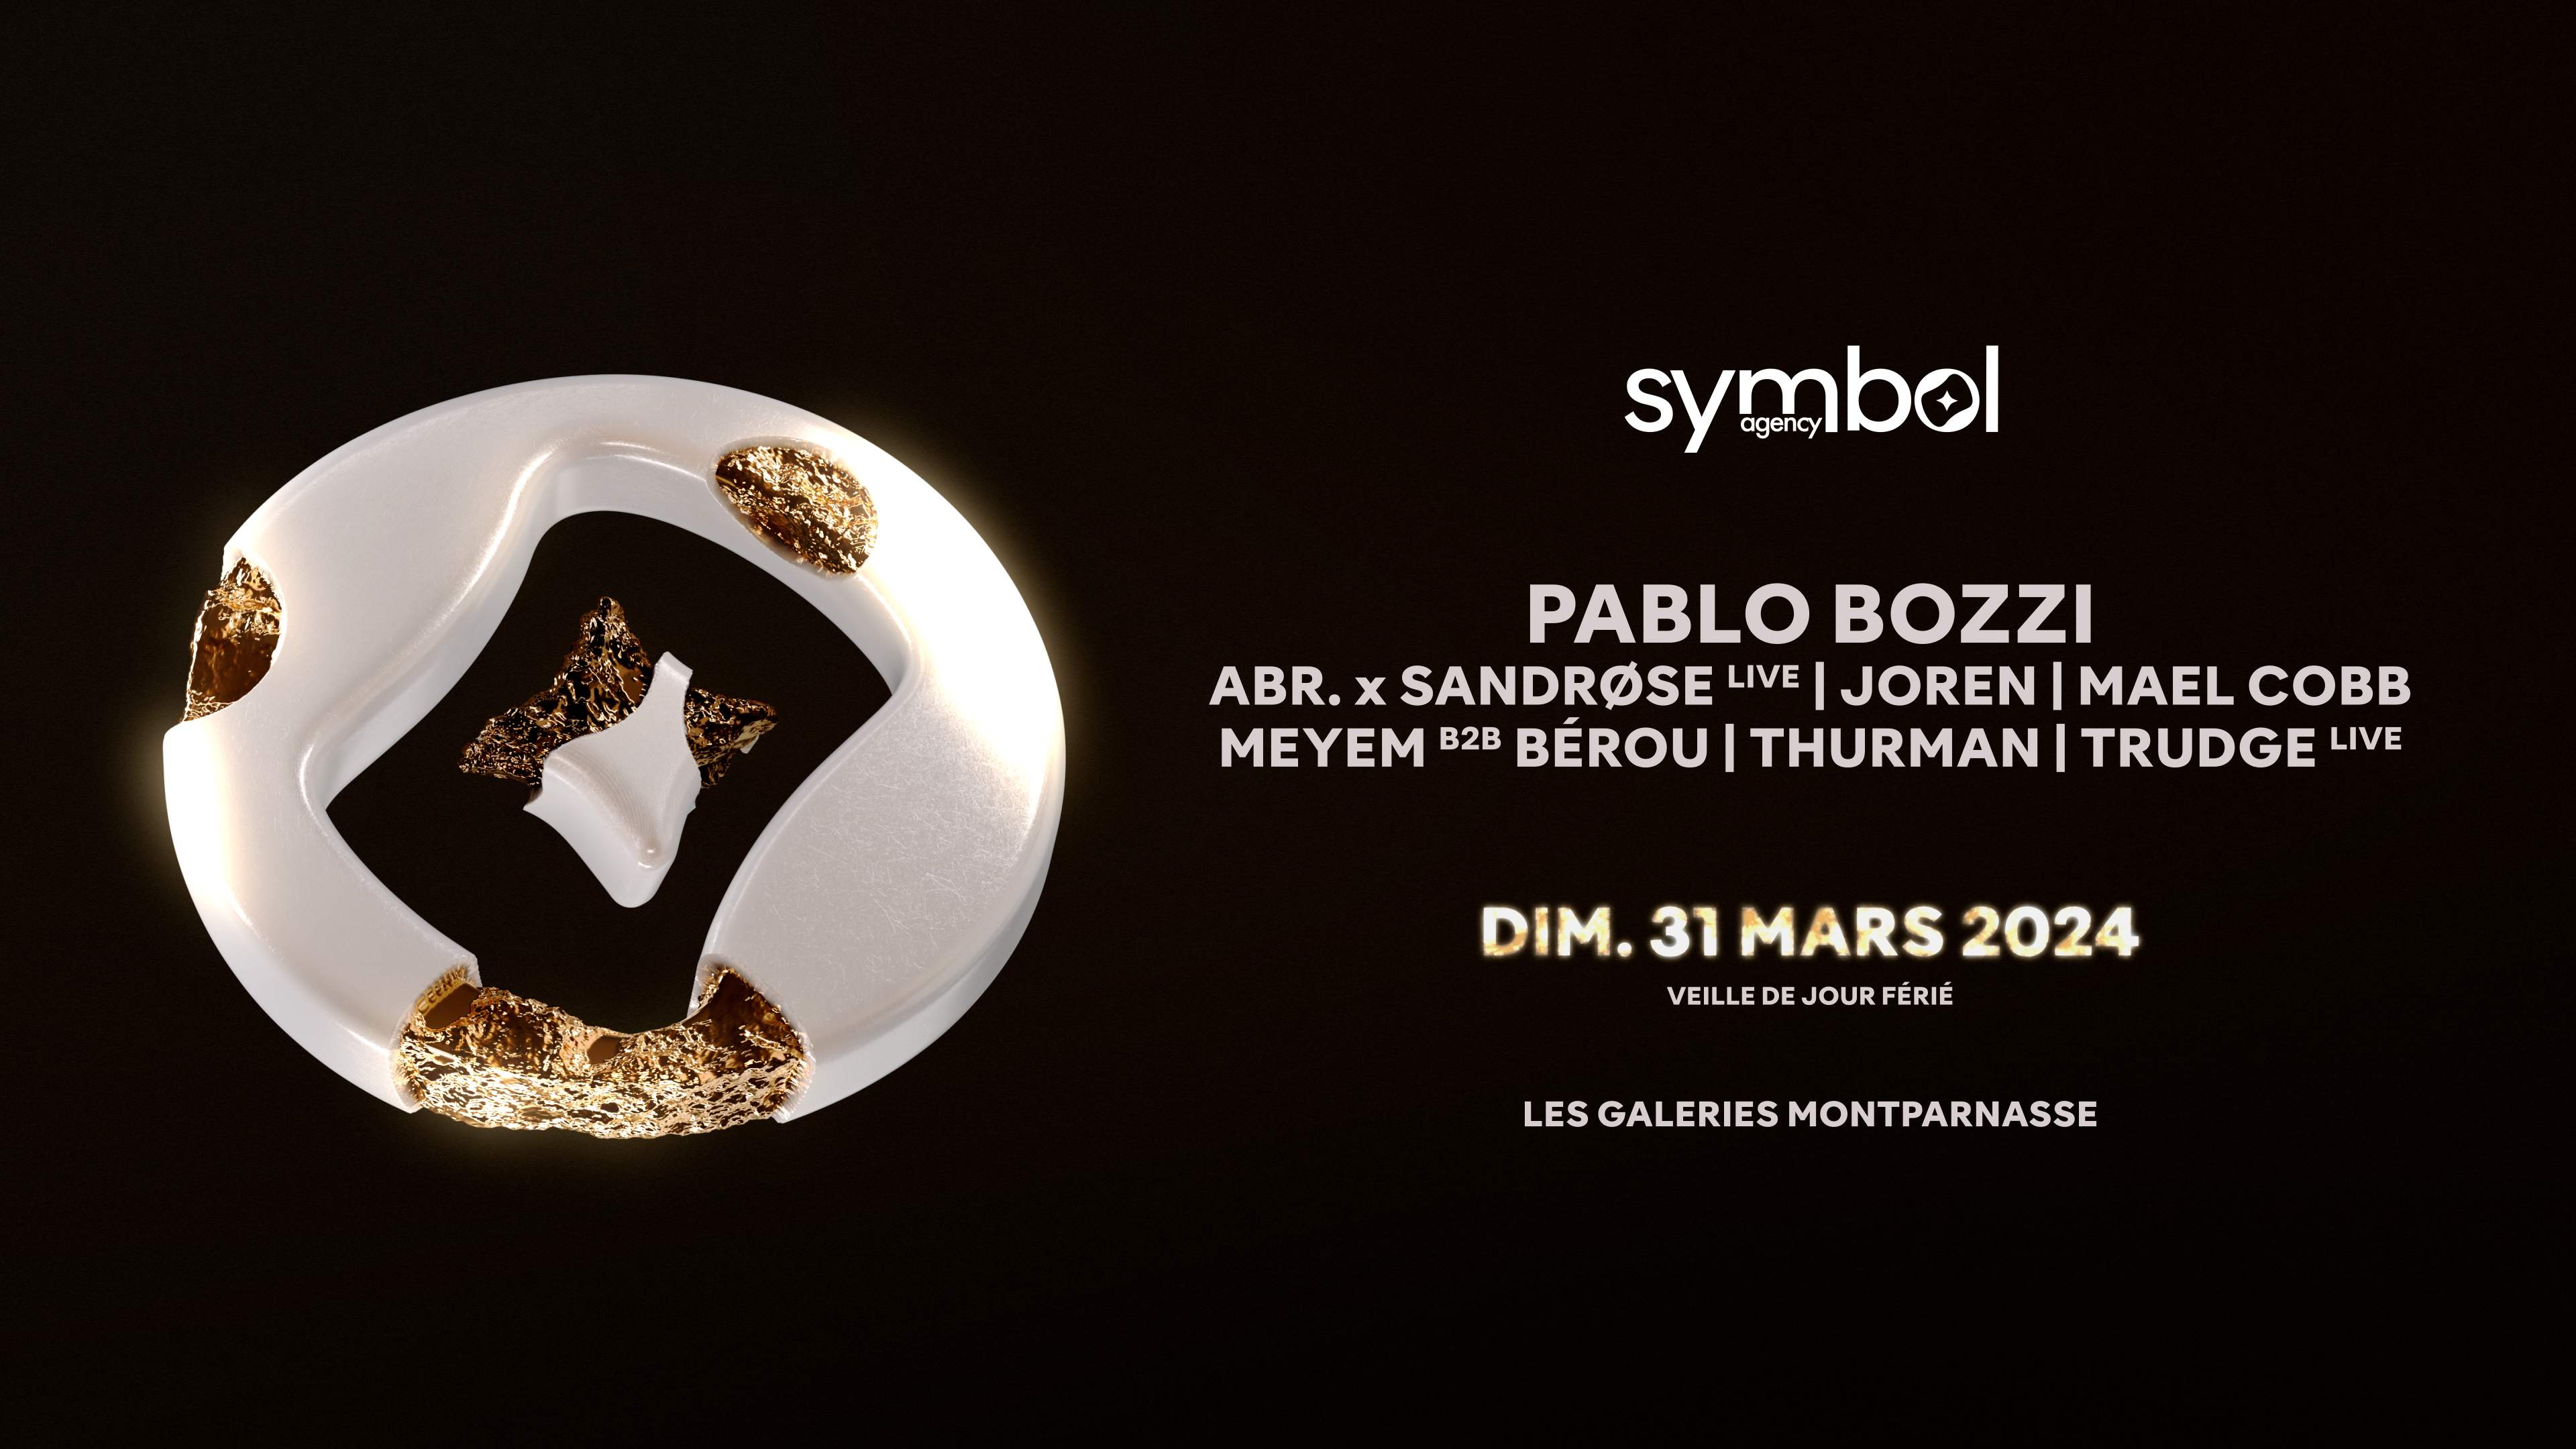 SYMBOL (veille de jour férié) : Pablo Bozzi, Abr. x Sandrøse Live, MEYEM B2B Bérou, Thurman - フライヤー表